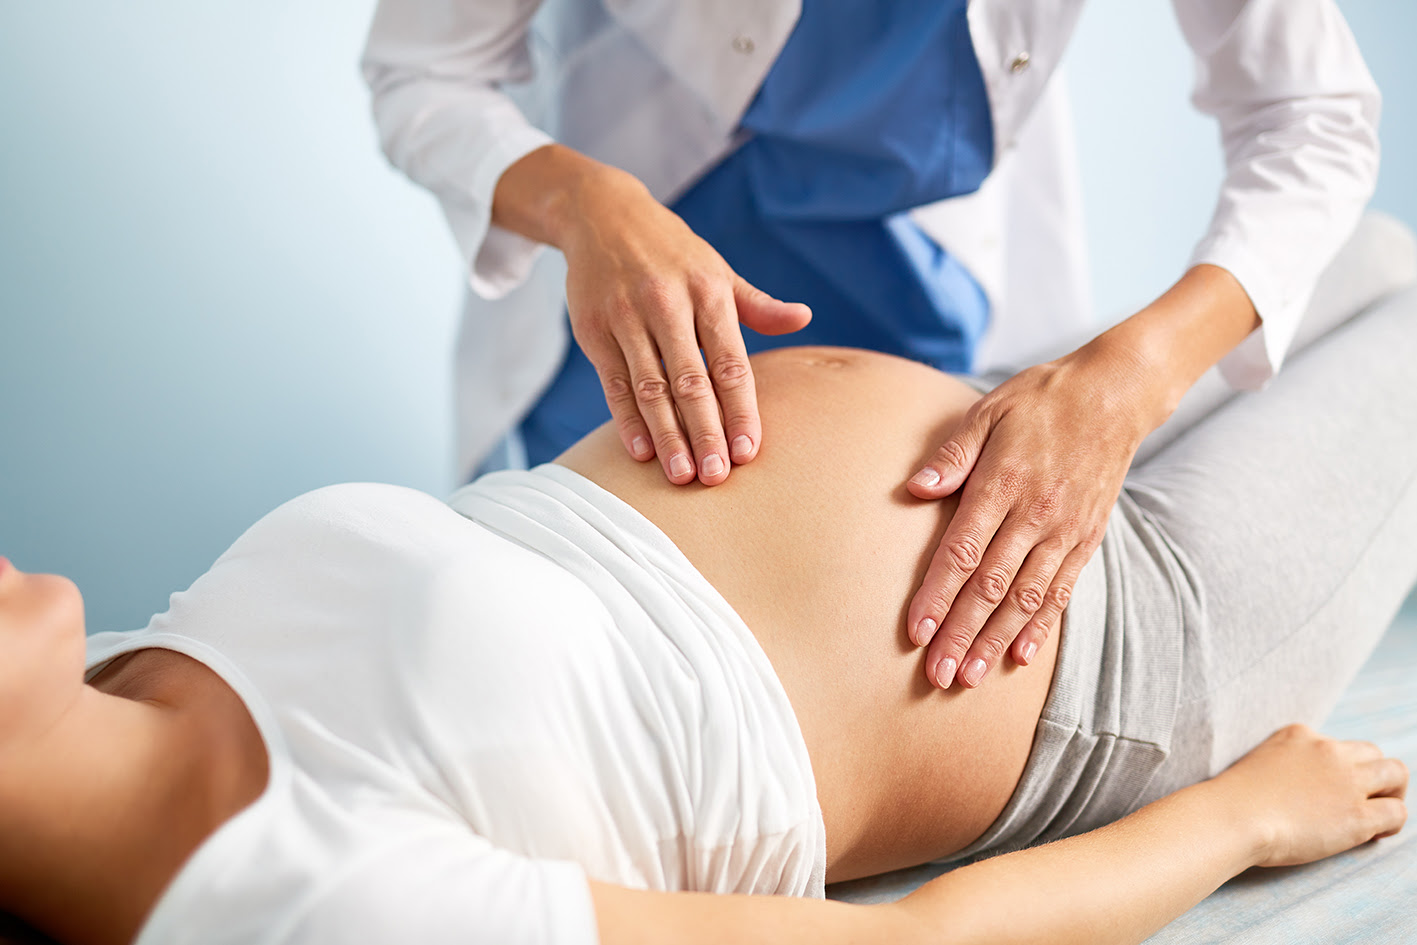 Fisioterapia obstétrica, una buena opción para llevar un embarazo